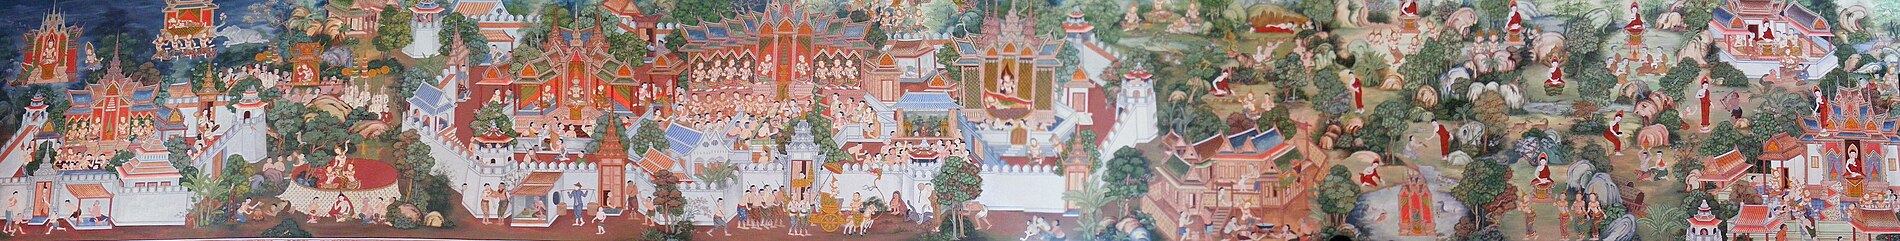 תצלום פנורמי של תמונה המתארת אירועים בחייו של בודהה (לצפייה הזיזו עם העכבר את סרגל הגלילה בתחתית התמונה)